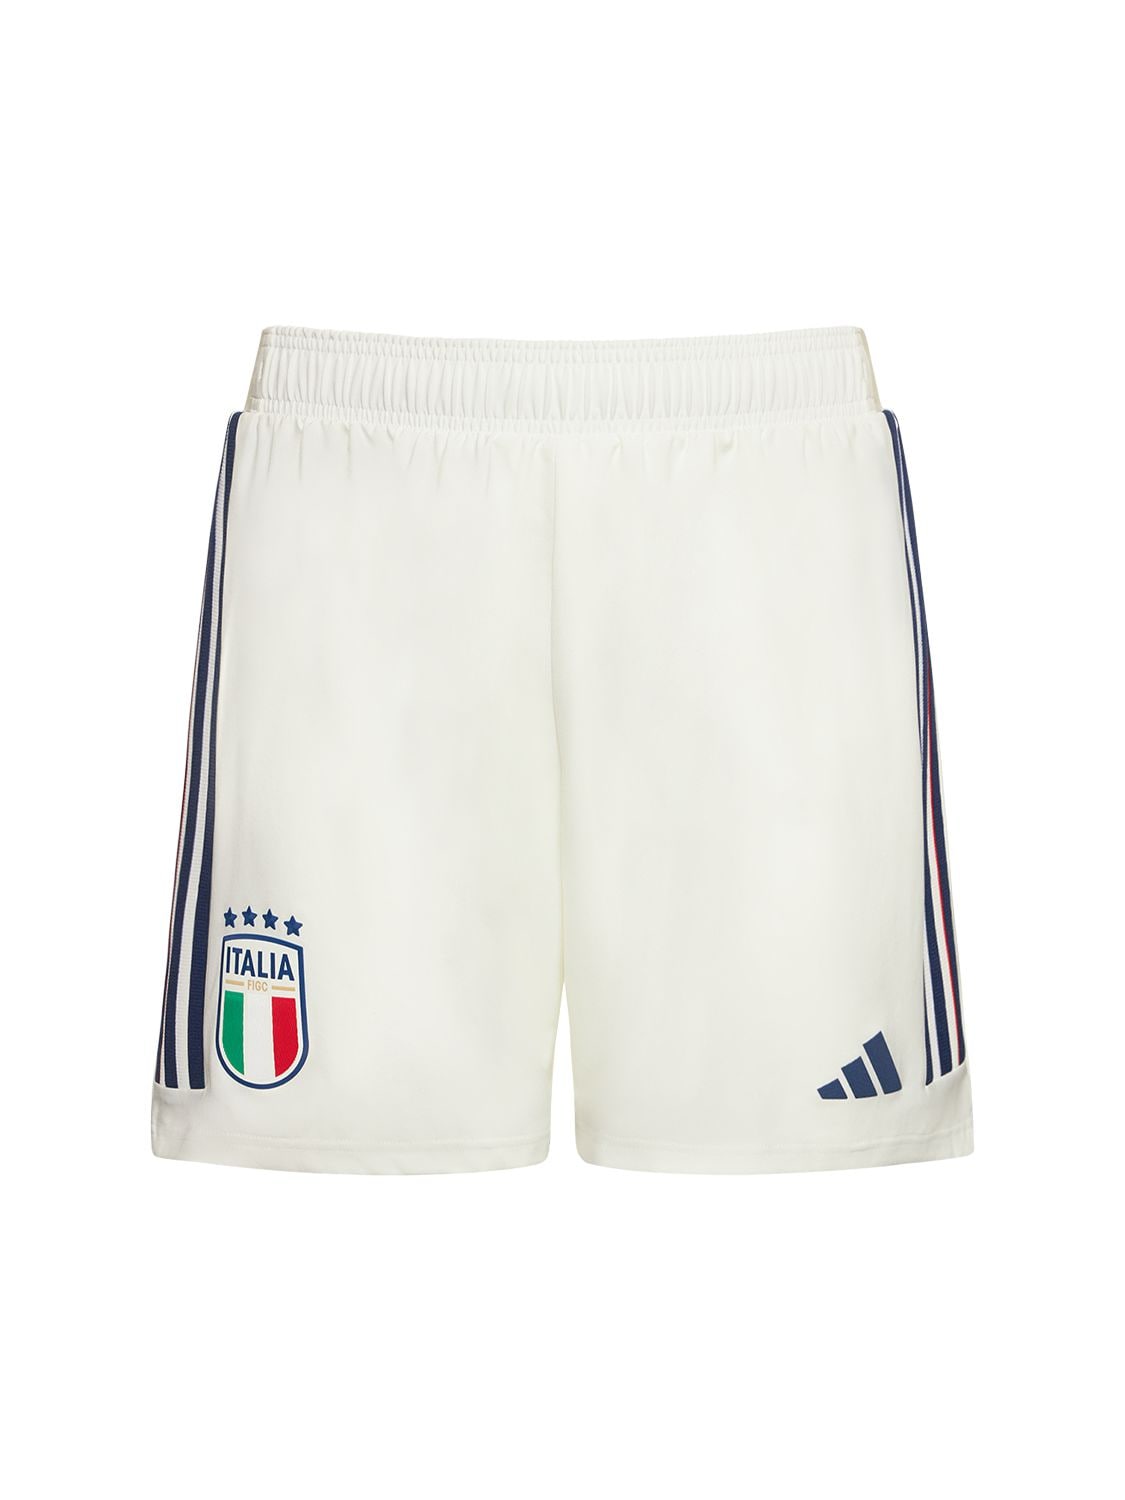 Shorts Italy 2023 Away Authentic - ADIDAS PERFORMANCE - Modalova